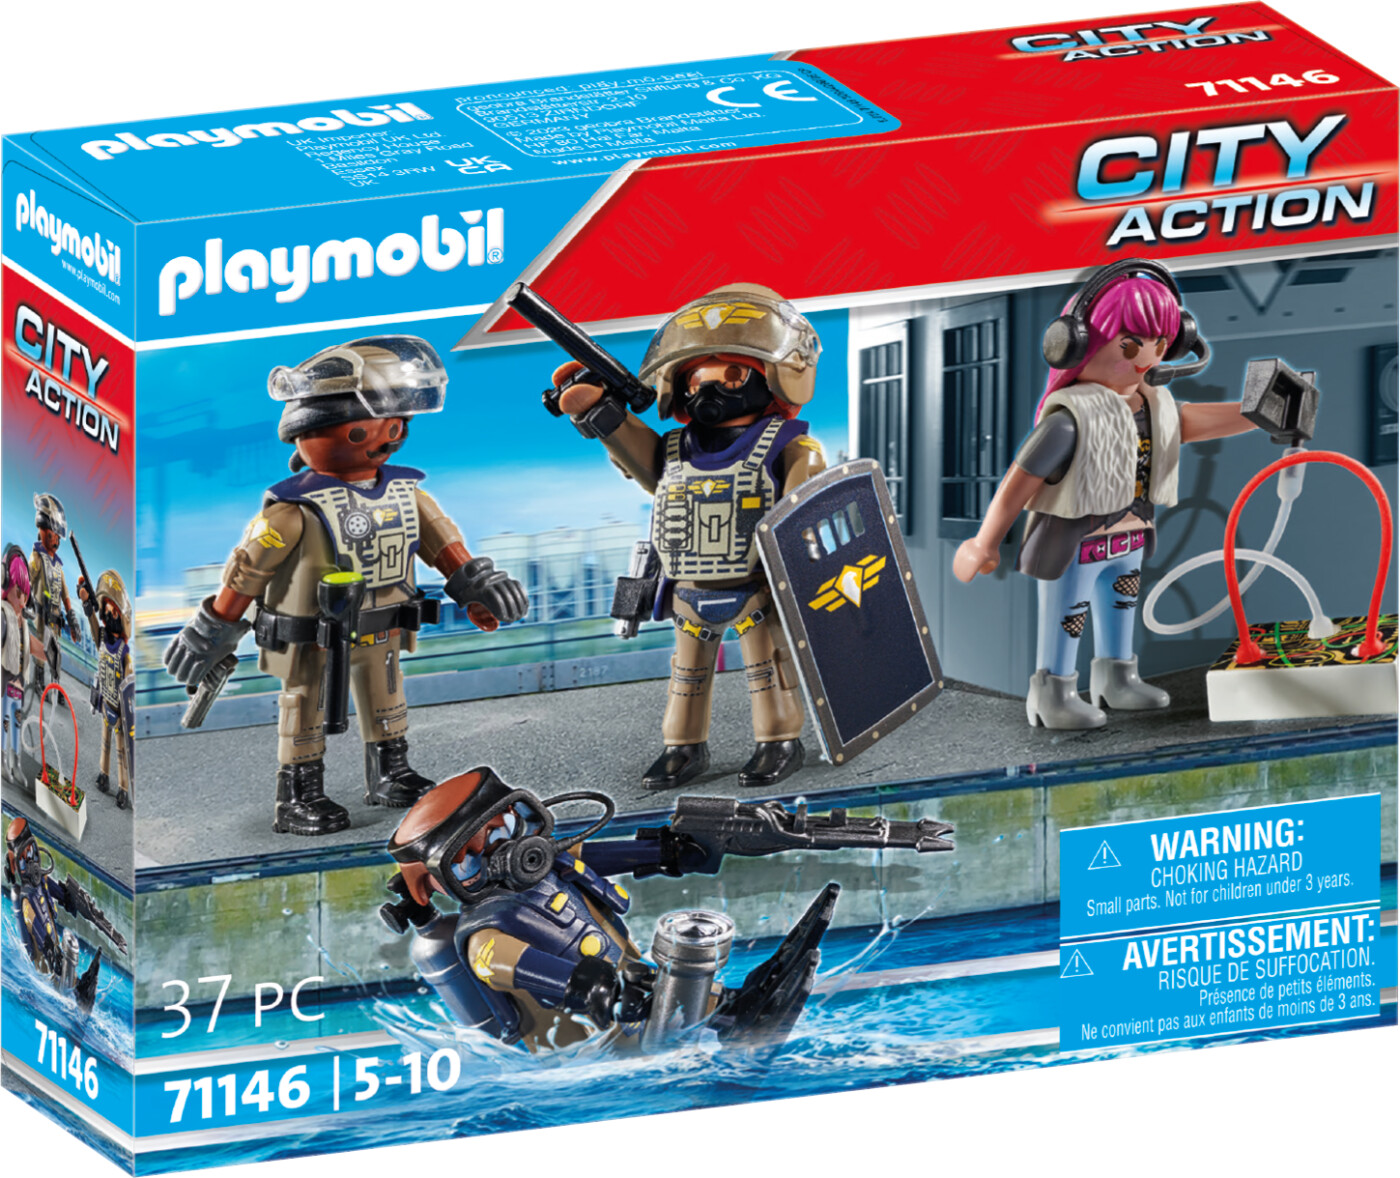 Billede af Playmobil City Action - Swat Figursæt - 4 Figurer - 71146 hos Gucca.dk